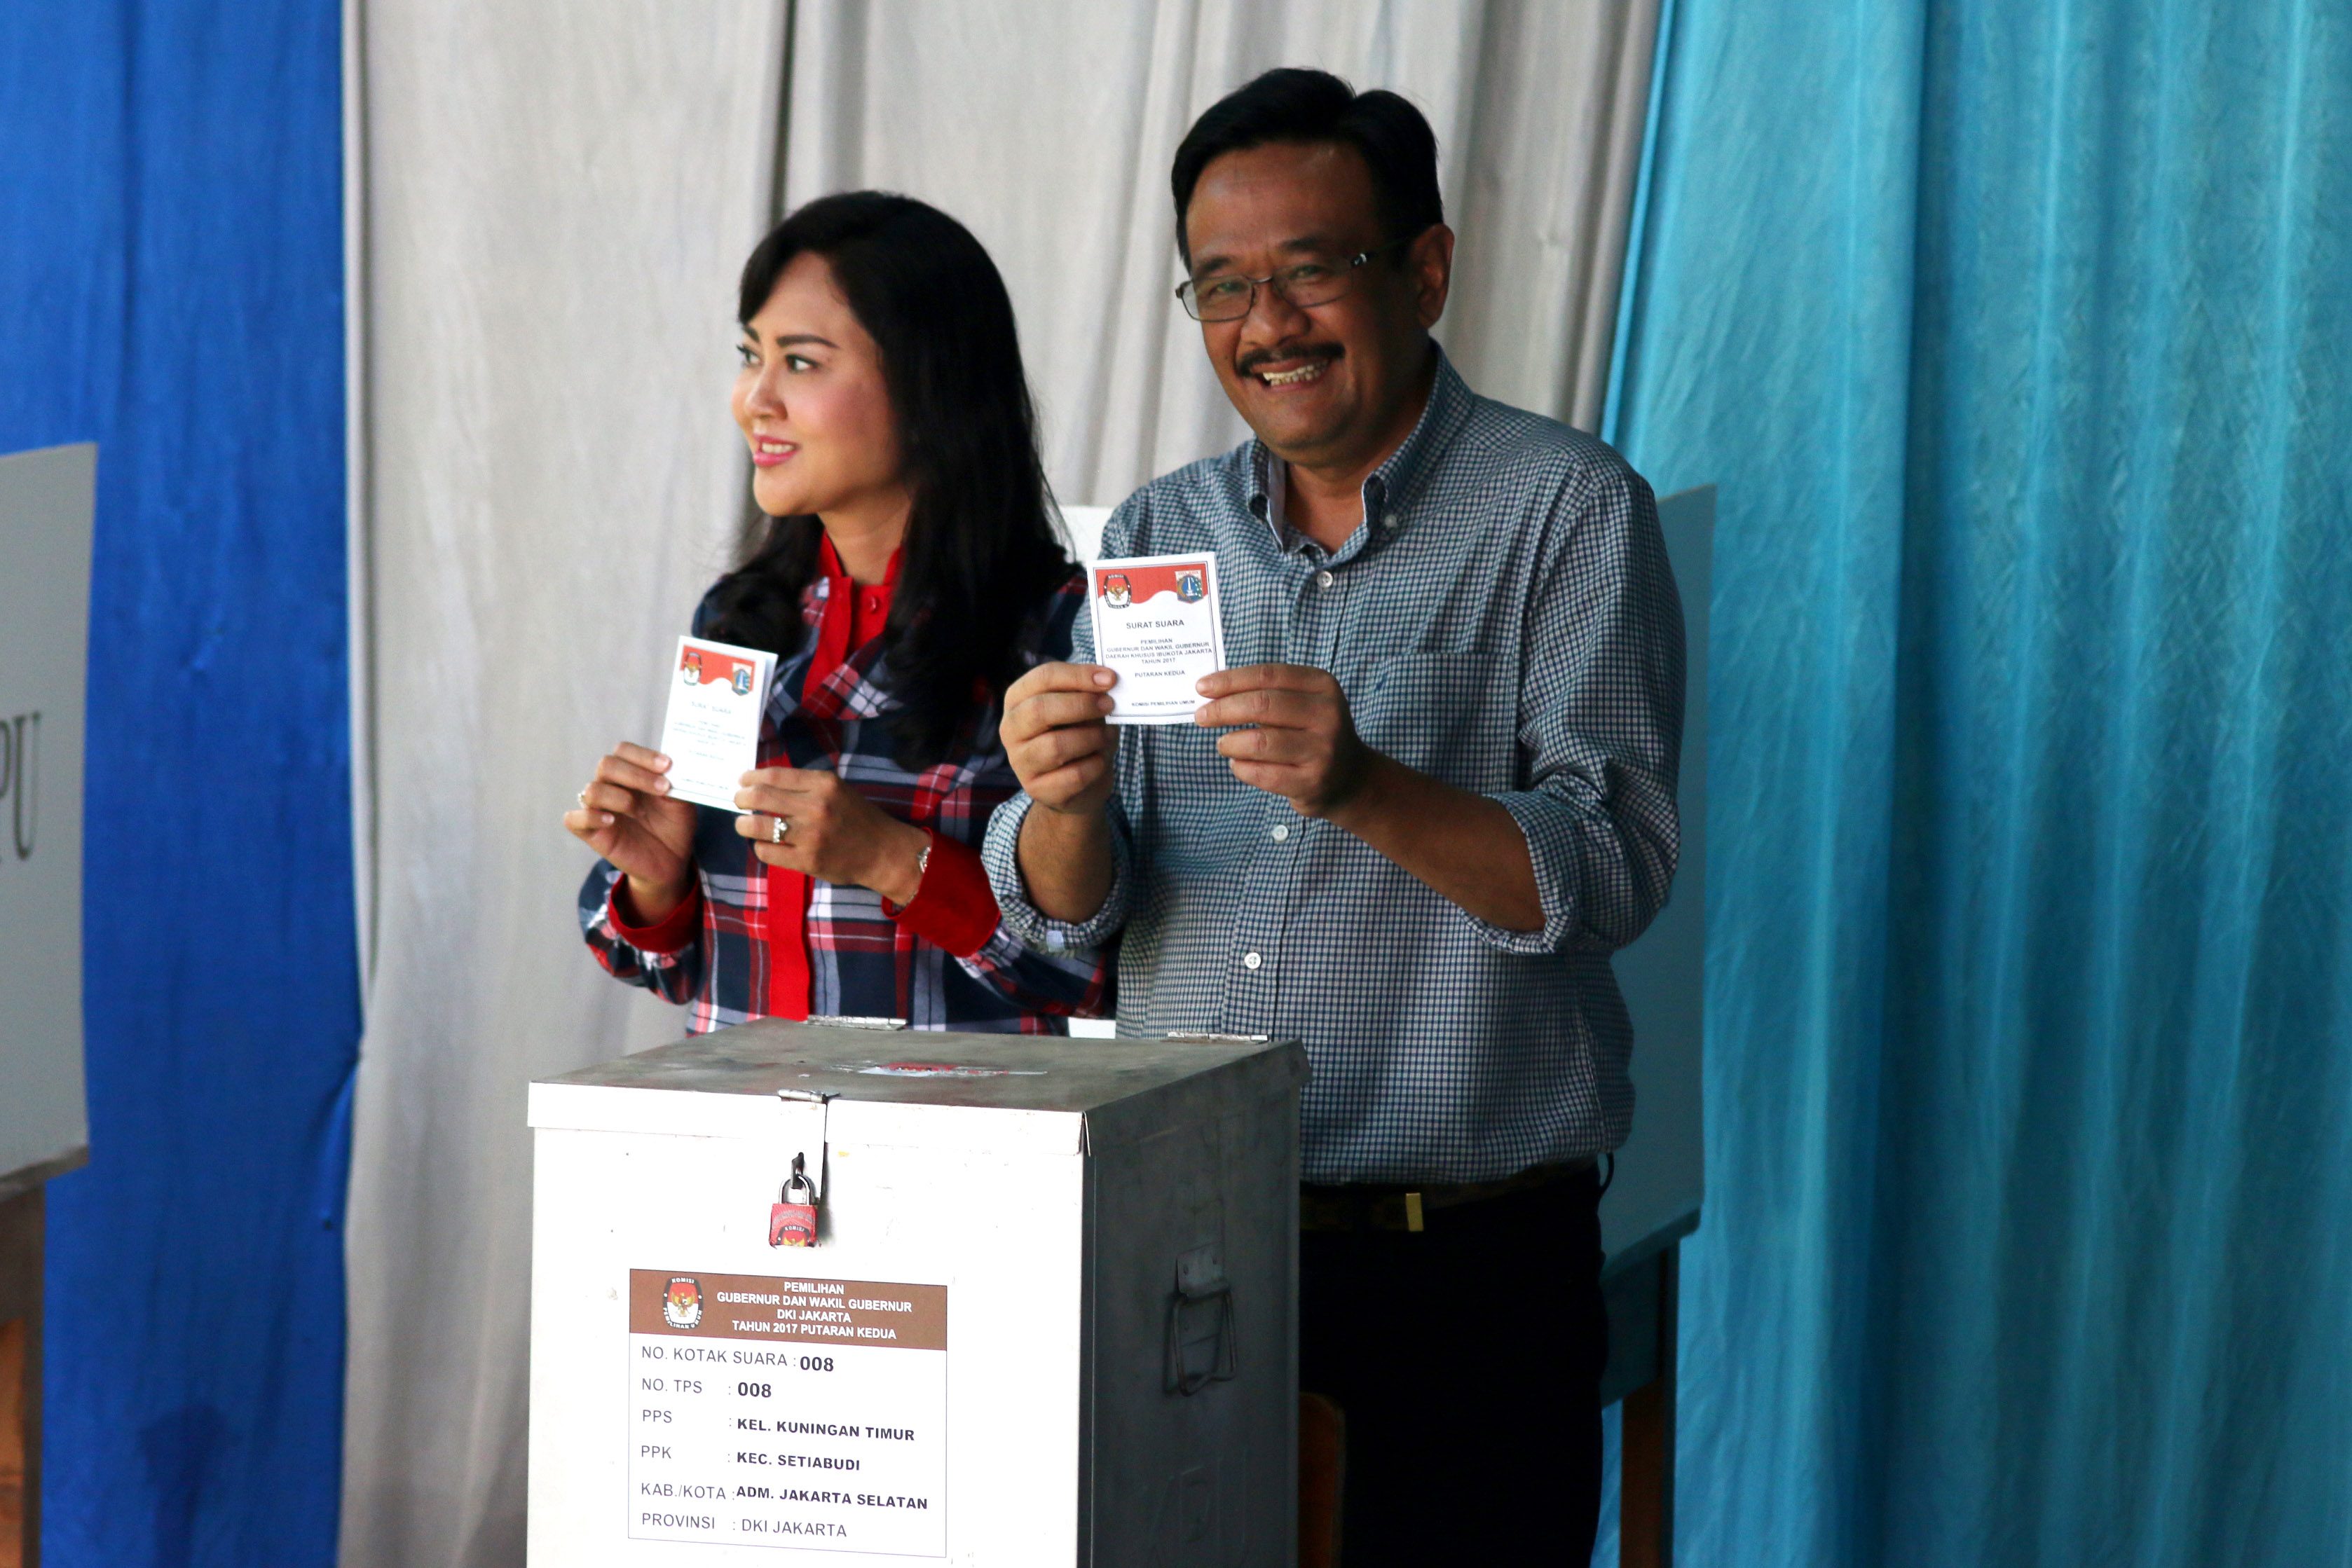 Cawagub DKI Djarot Saiful Hidayat (kanan) bersama istri, Happy Farida (kiri) menggunakan hak pilih di TPS 8, Kuningan, Jakarta, pada 19 April 2017. Foto oleh Rivan Awal Lingga/Antara 